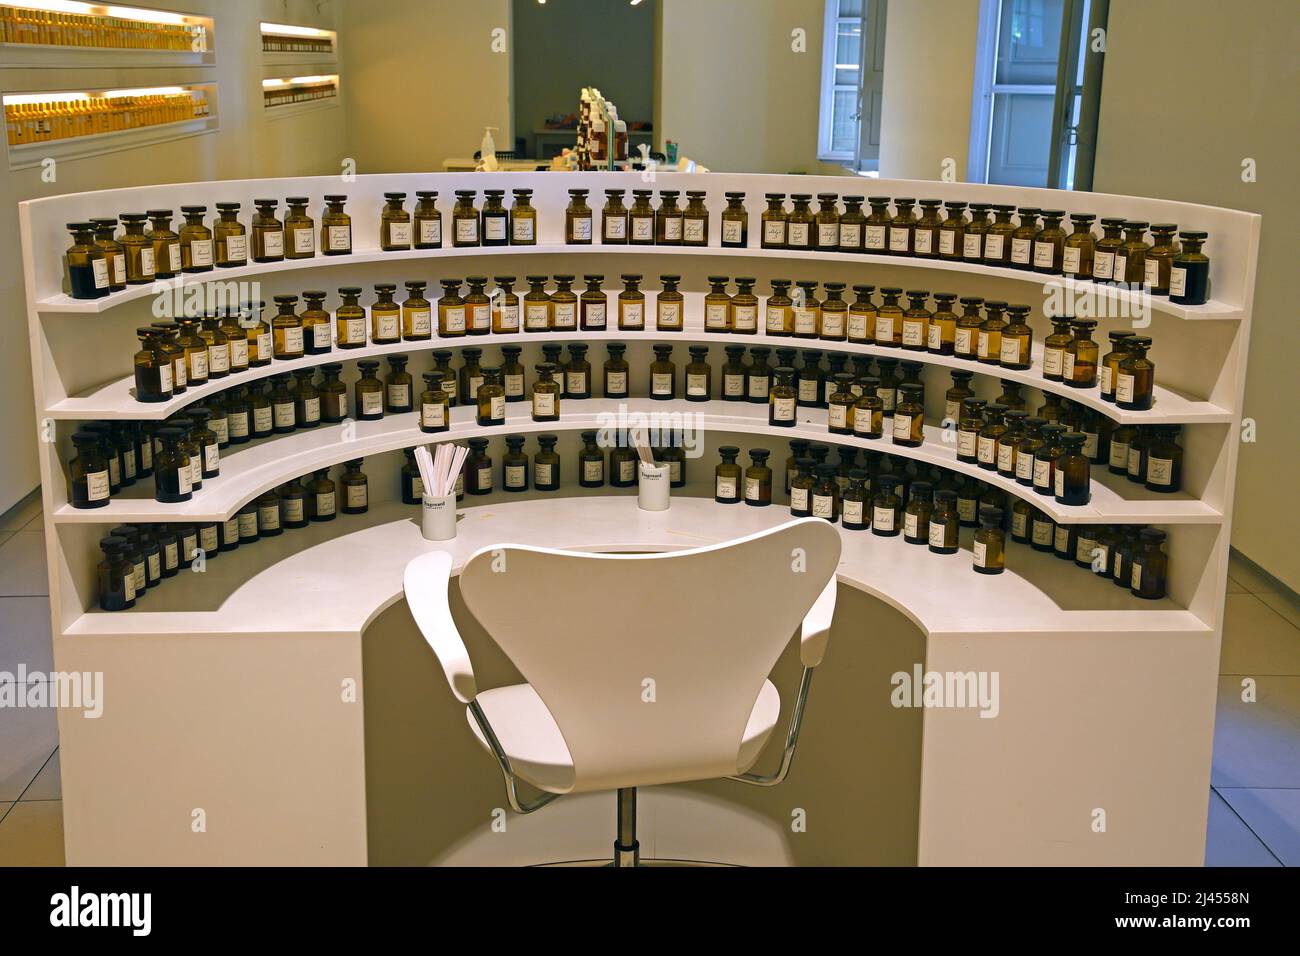 Arbeitsplatz der sogenannten Nase, dem Parfumeur, Parfümproduzent, Fragonard, Grasse, Var, Provence, Südfrankreich, Frankreich Stock Photo